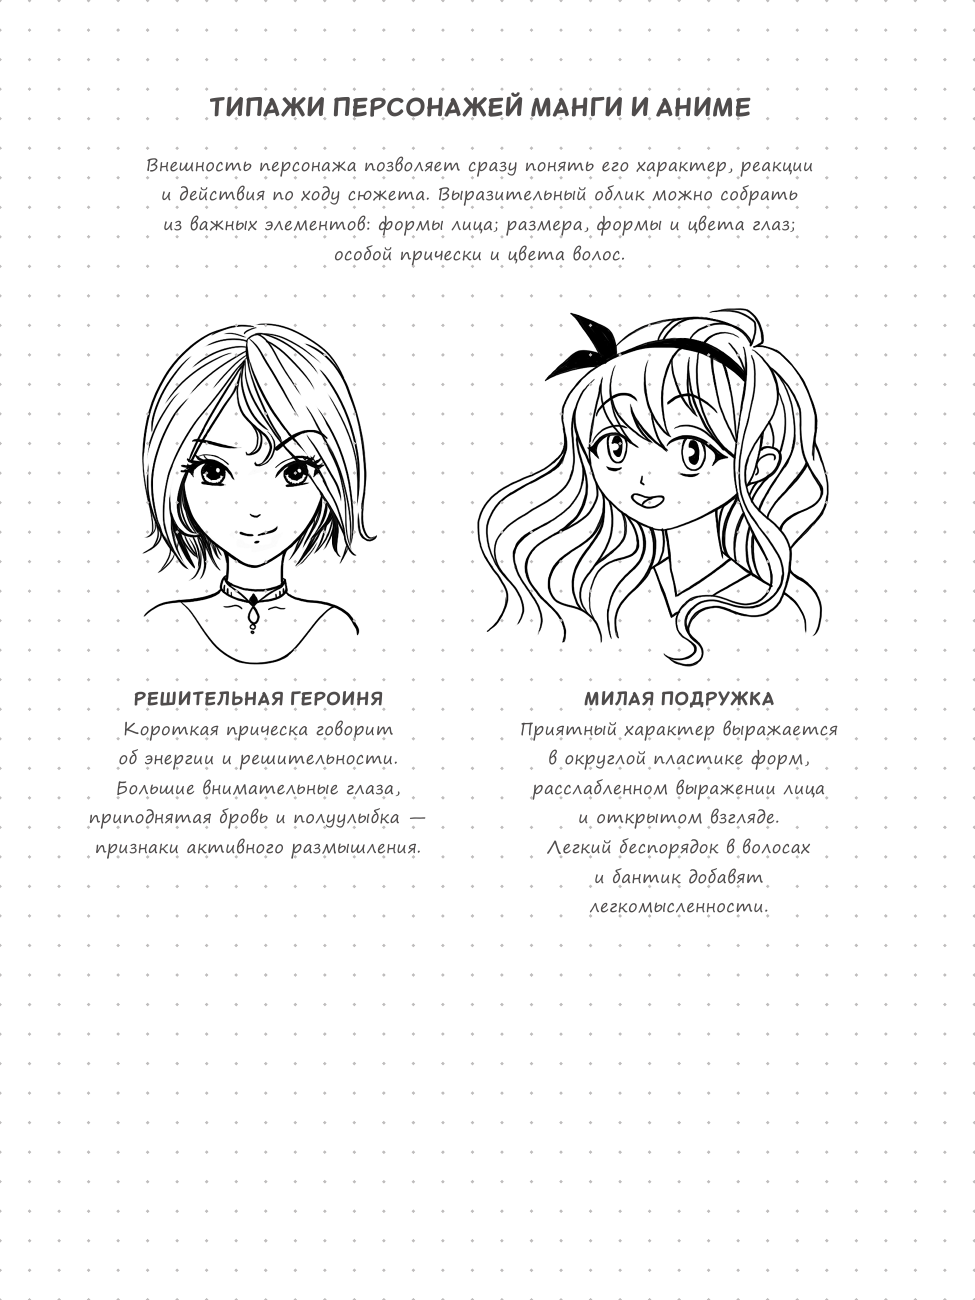 Sketchbook. Рисуем мангу и аниме - фото №15